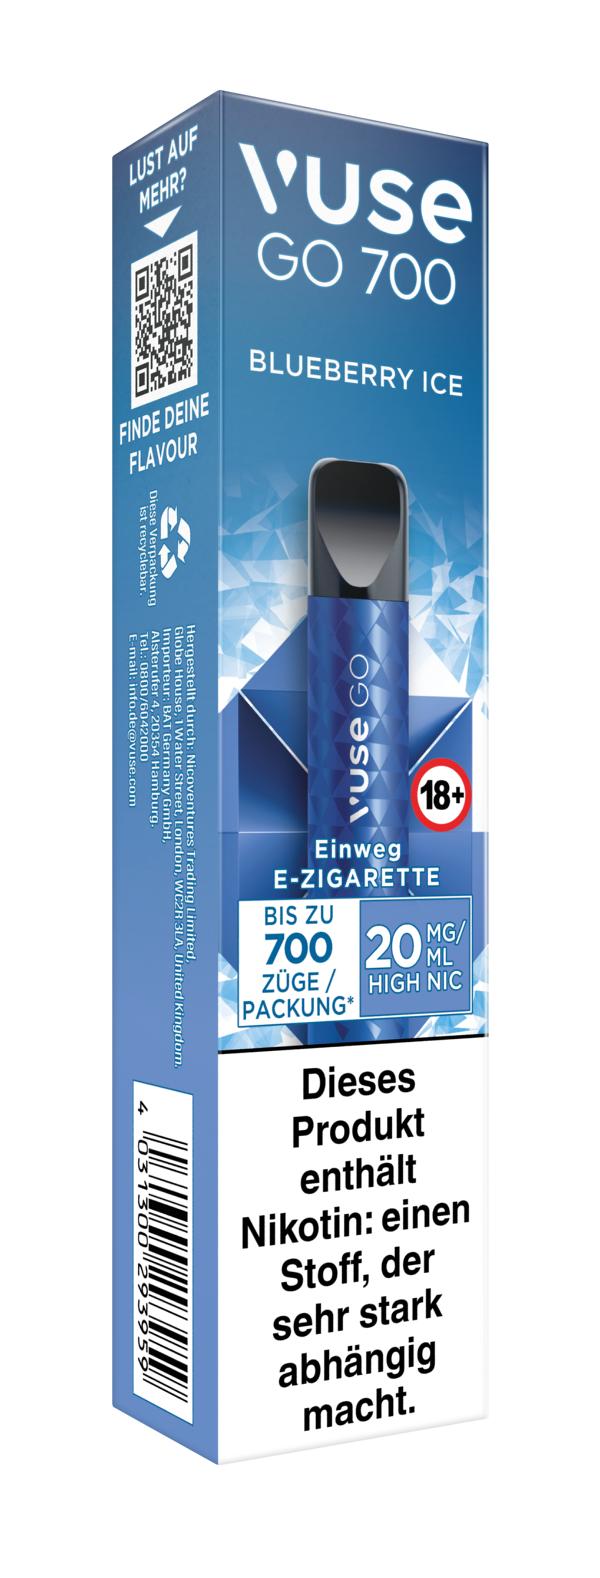 Vuse Go 700 Einweg E-Zigarette Blueberry Ice 20mg/ml Nikotin